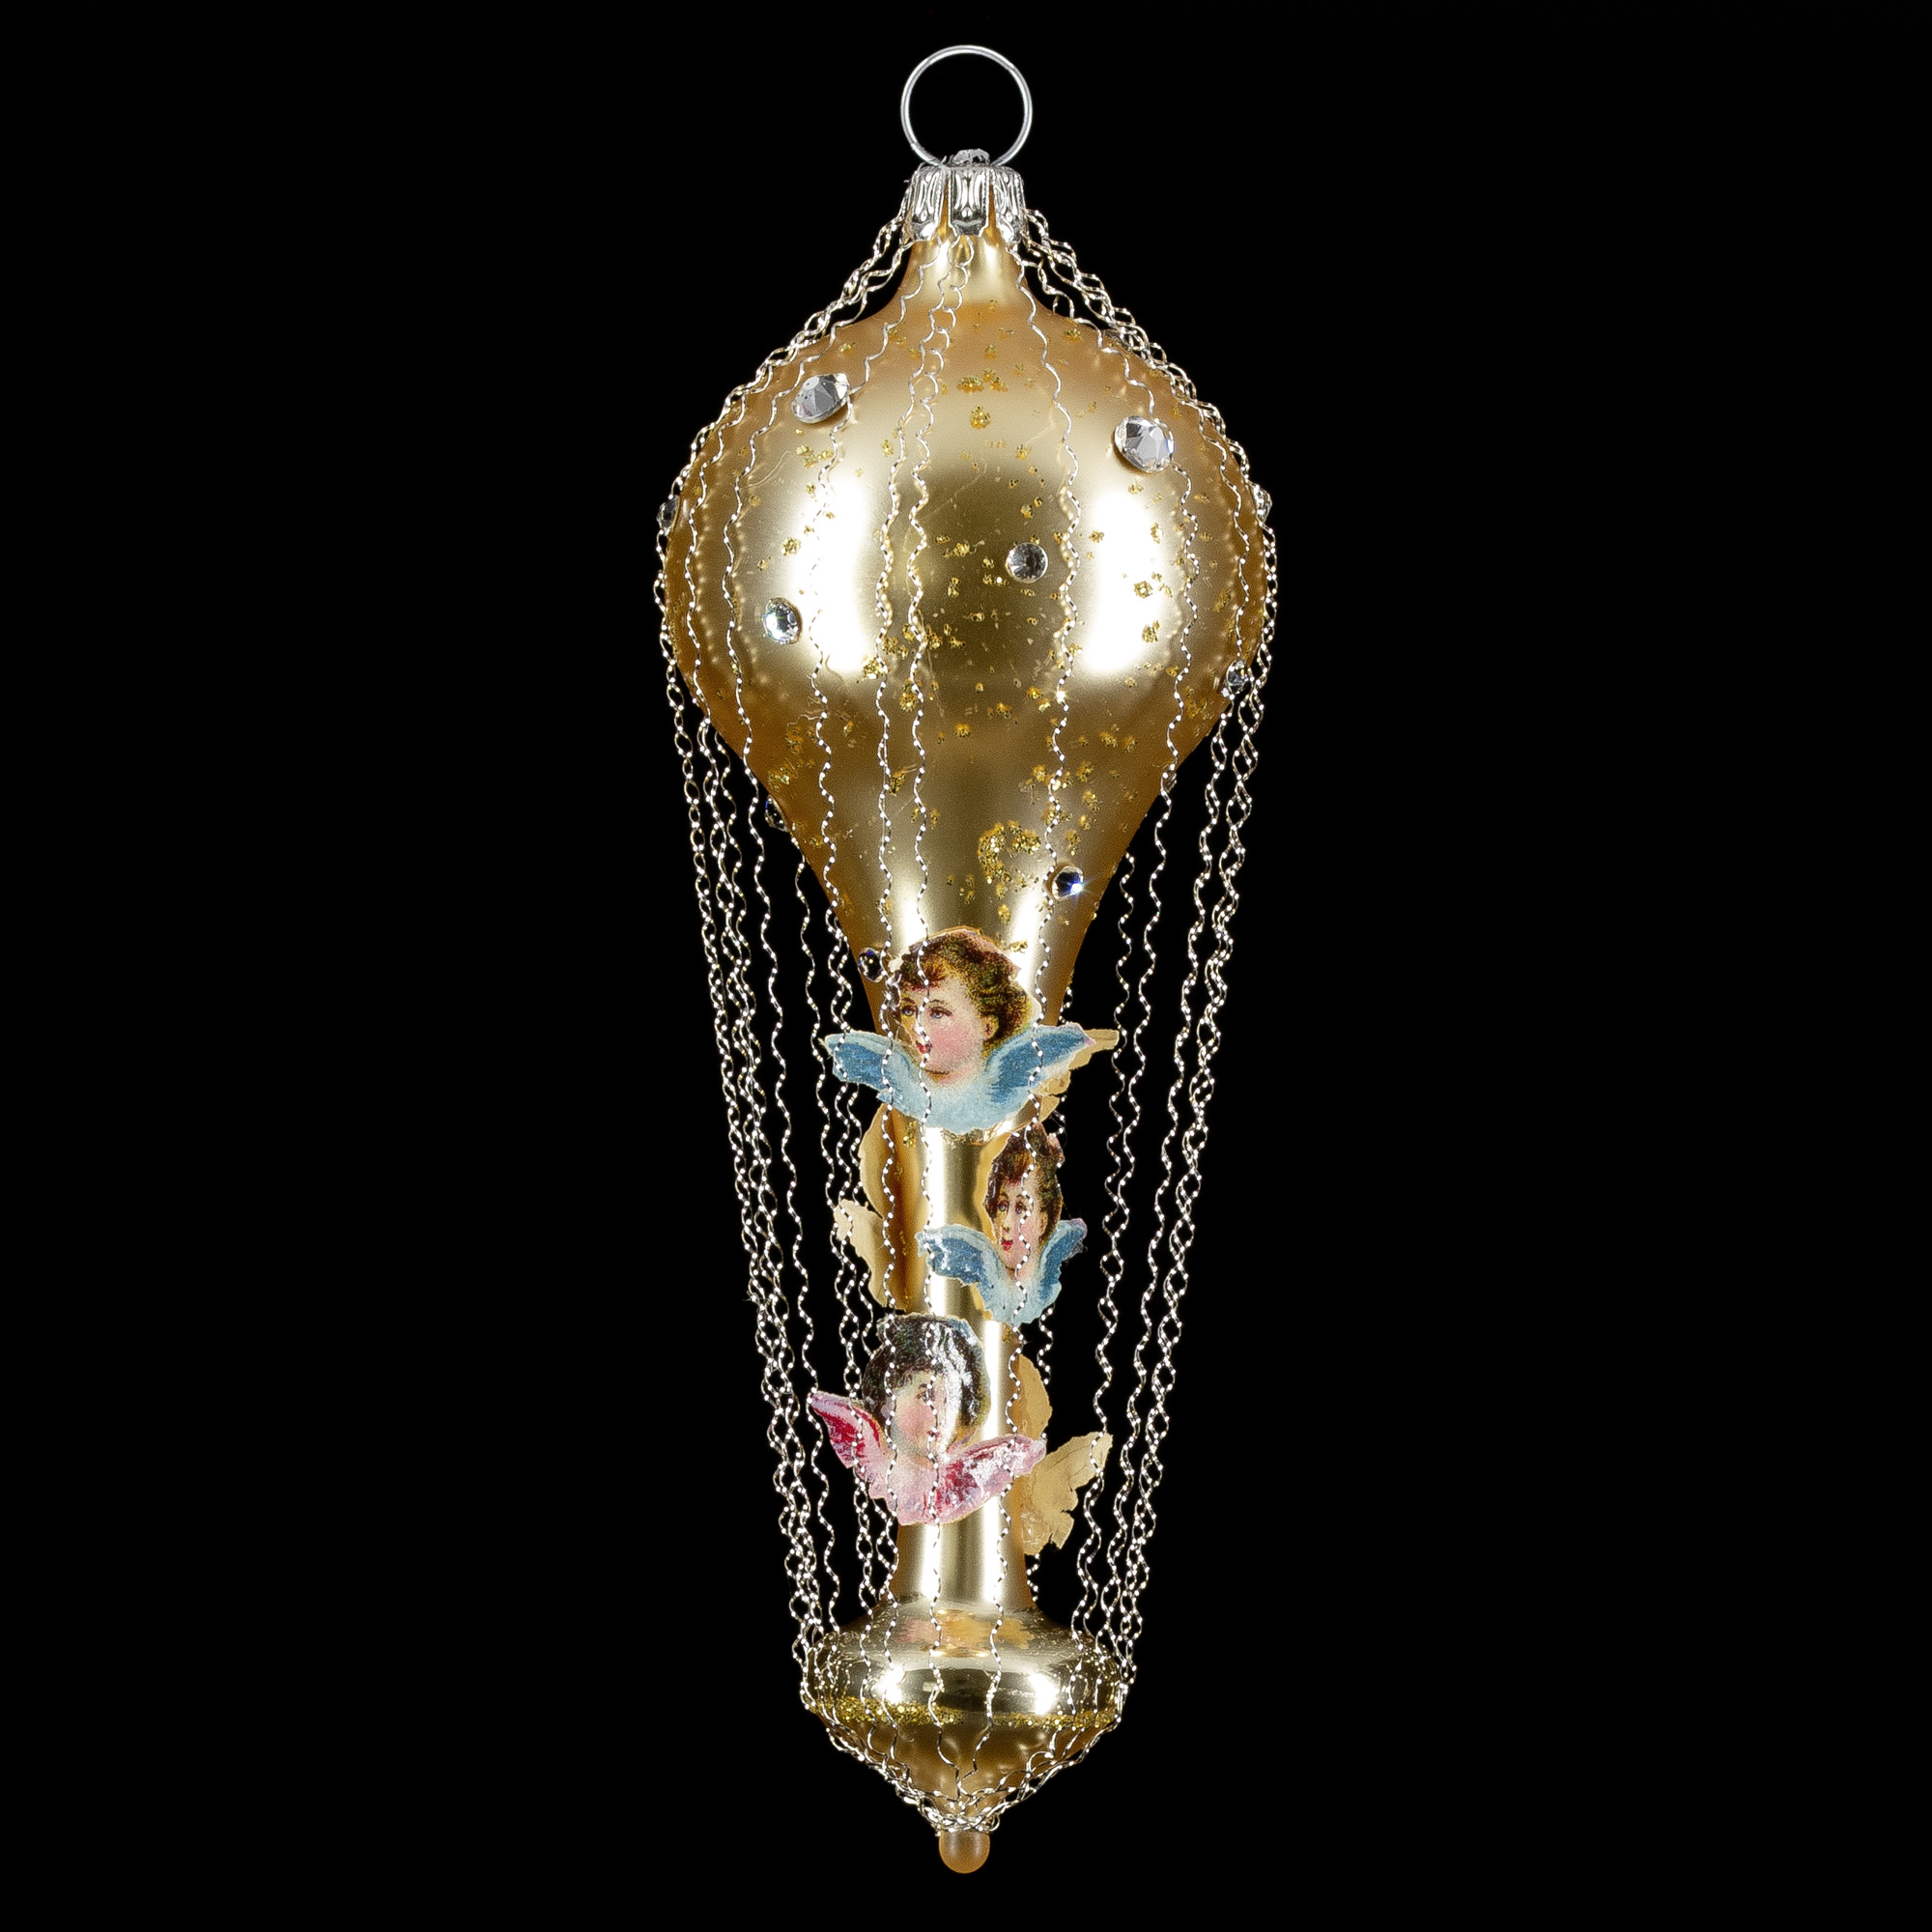 Ballon mit Engelskopf-Oblaten und Swarowsky-Kristallen, gold